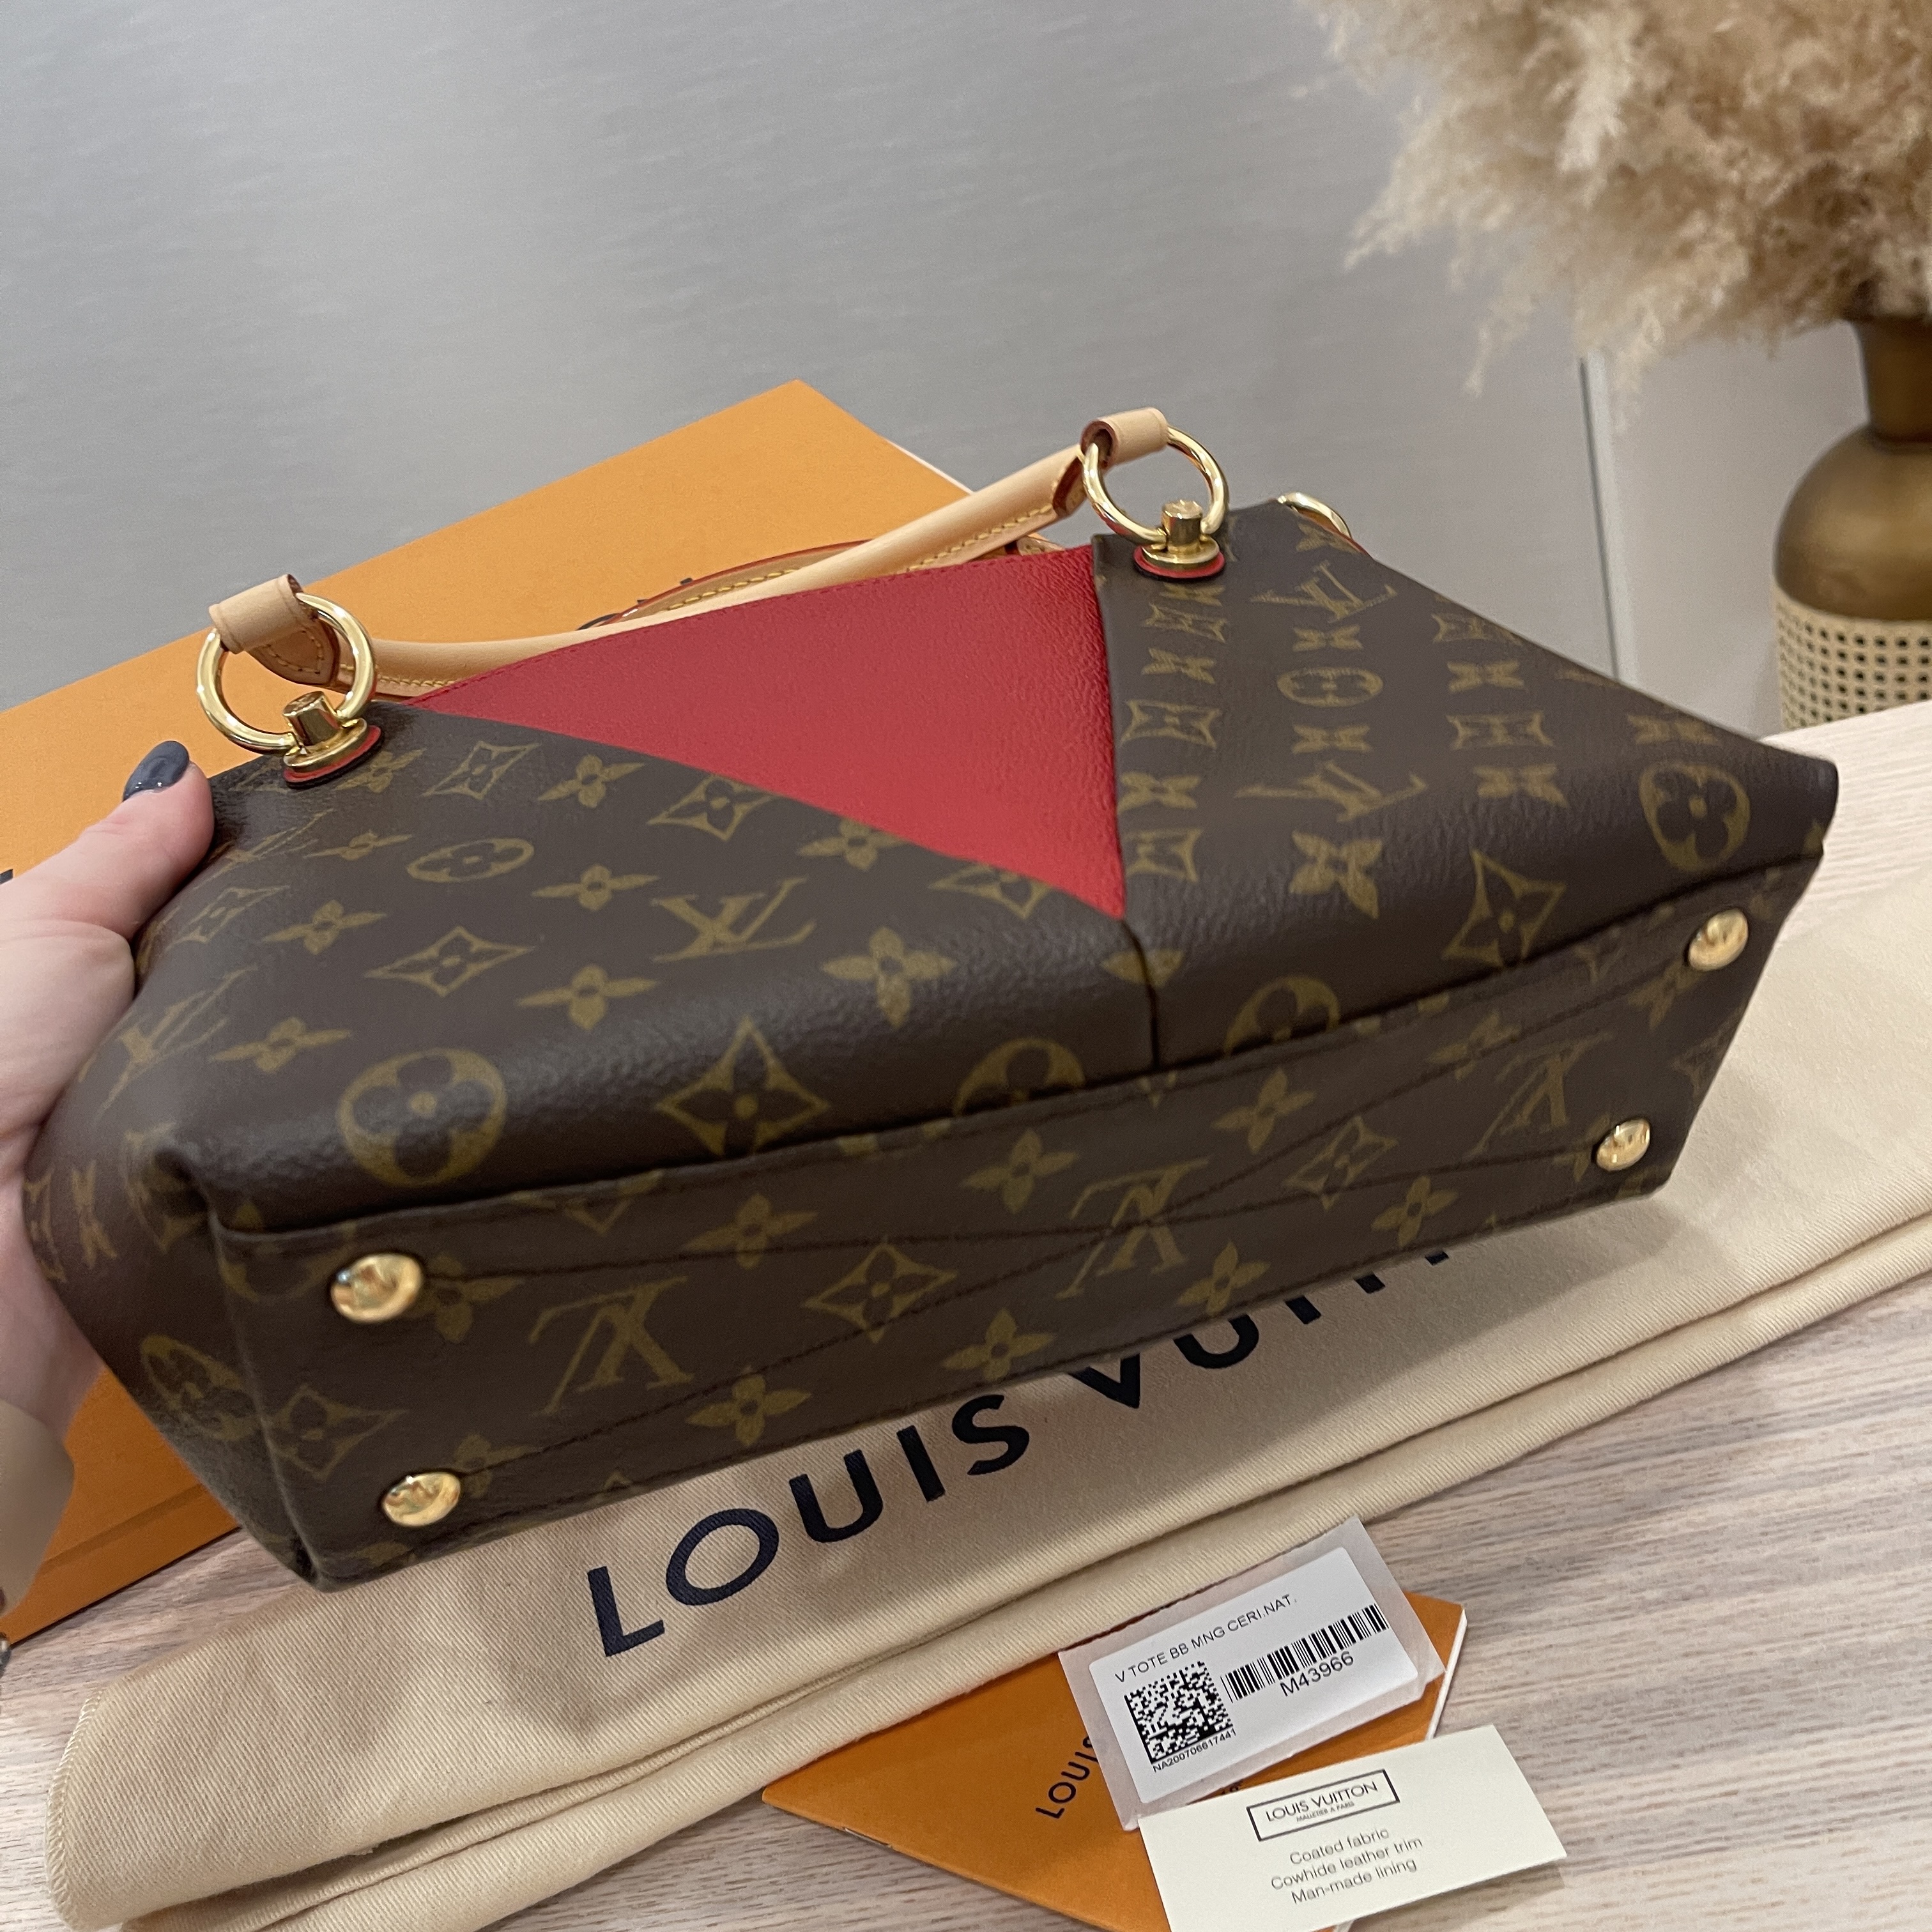 louisvuitton v tote bb - Michellechiam,The Luxury Shopper